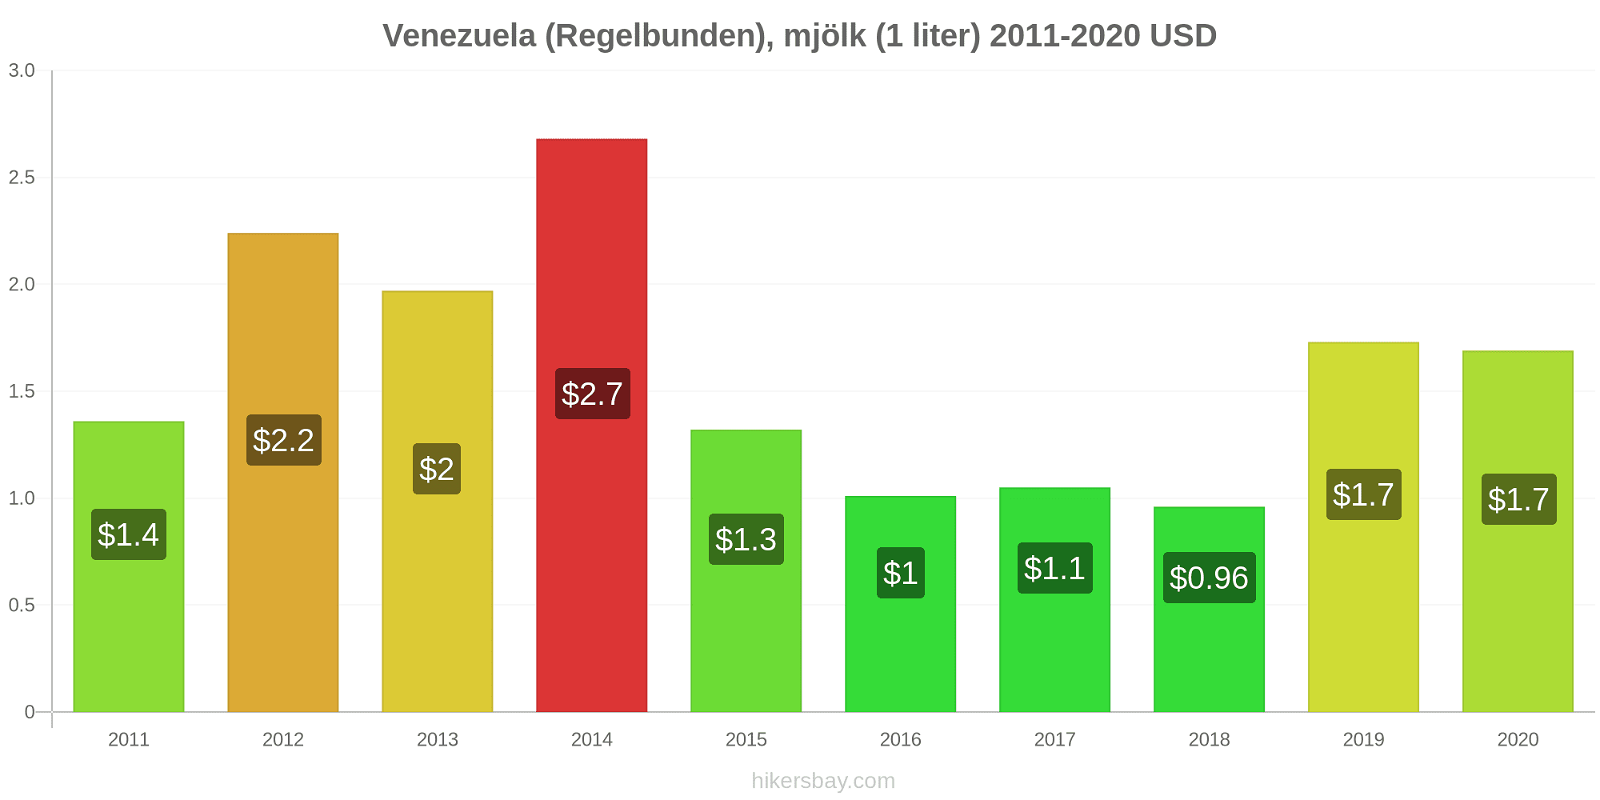 Venezuela prisförändringar (Regelbunden), mjölk (1 liter) hikersbay.com